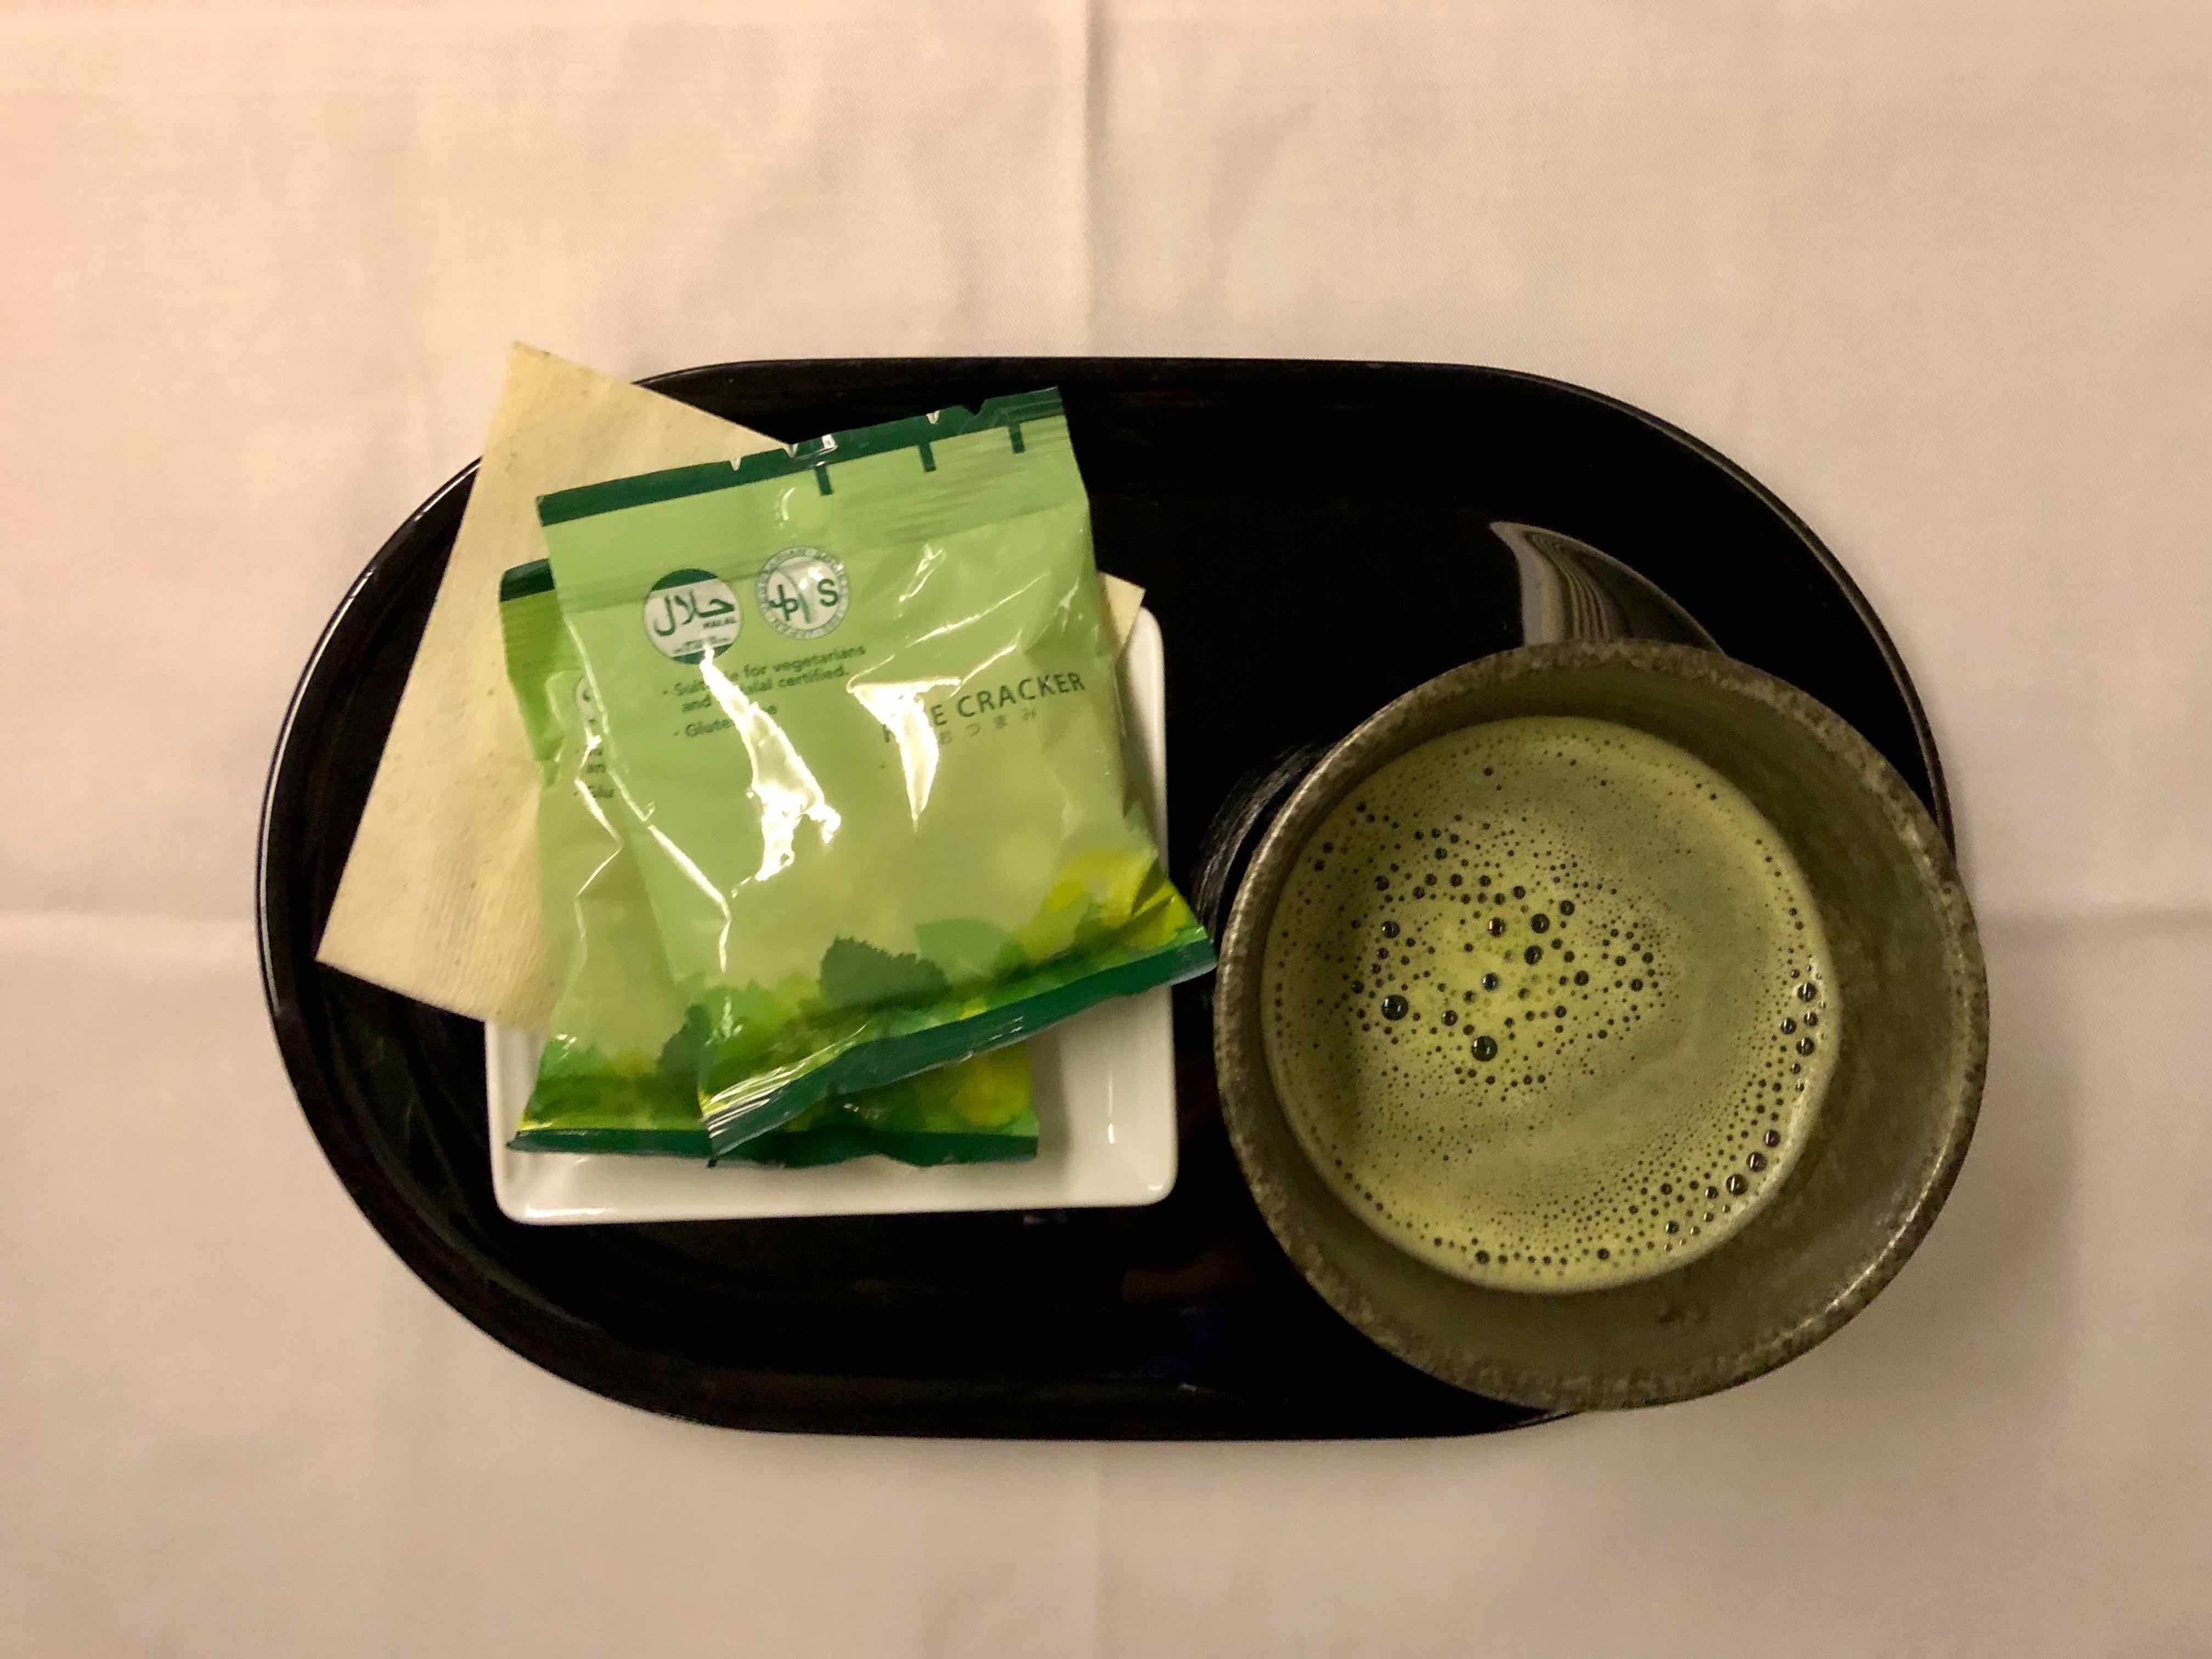 ANA 777 First Class matcha green tea